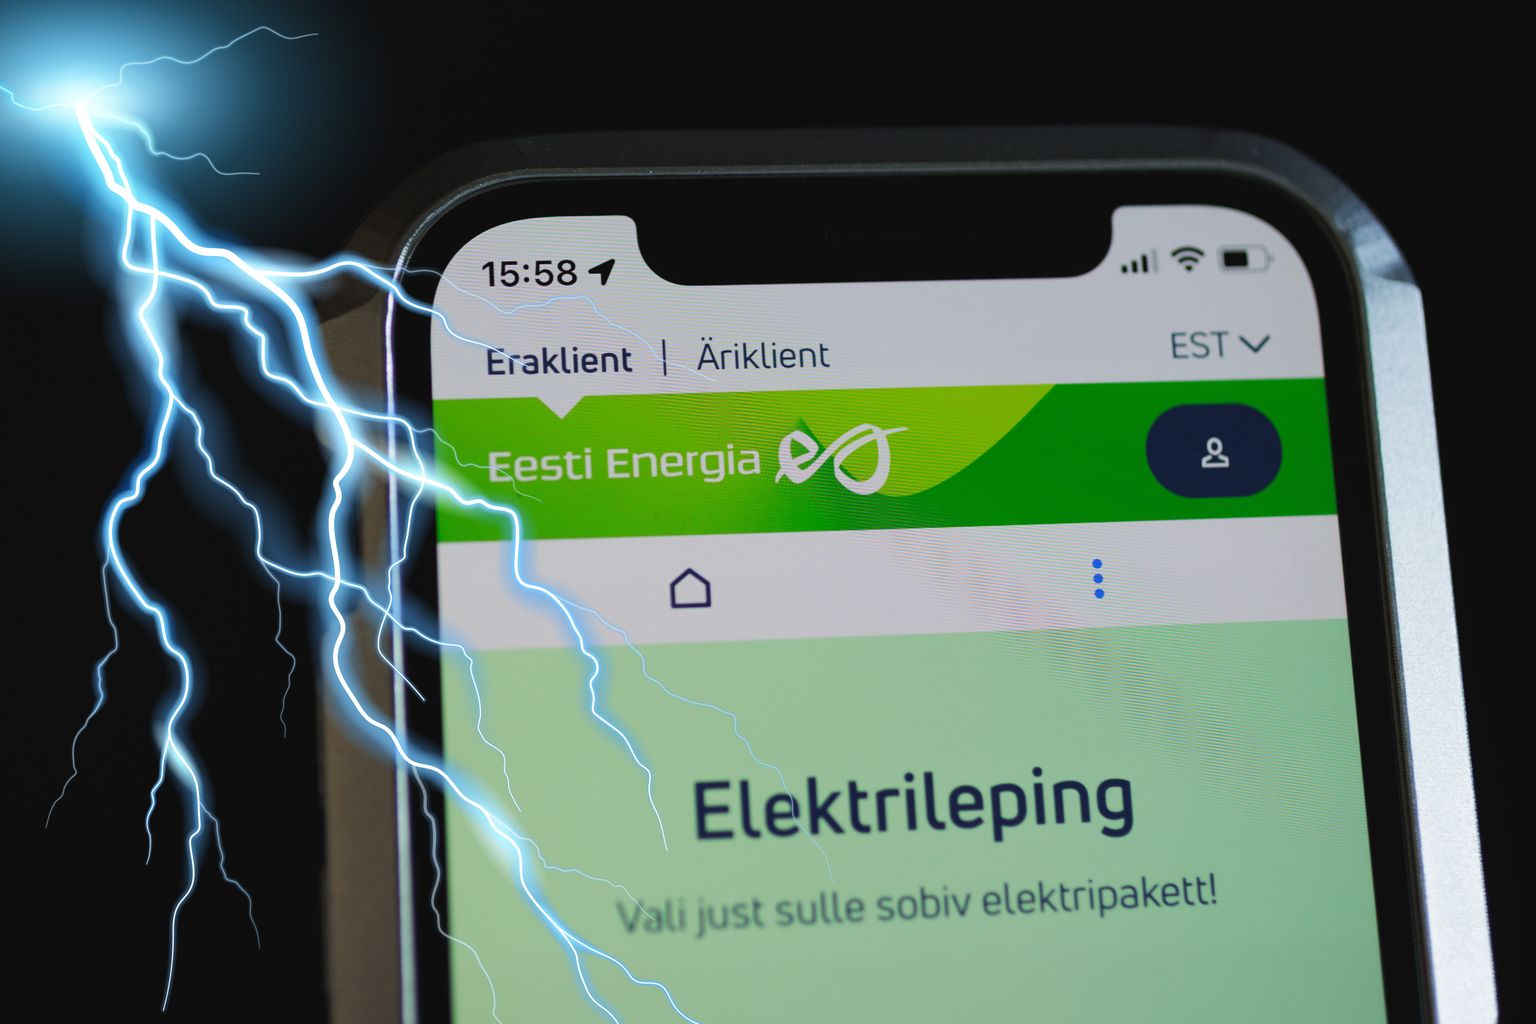 Если частное лицо переходит на пакет государственных цен Eesti Energia, отказаться от текущего поставщика электроэнергии следует до конца августа.